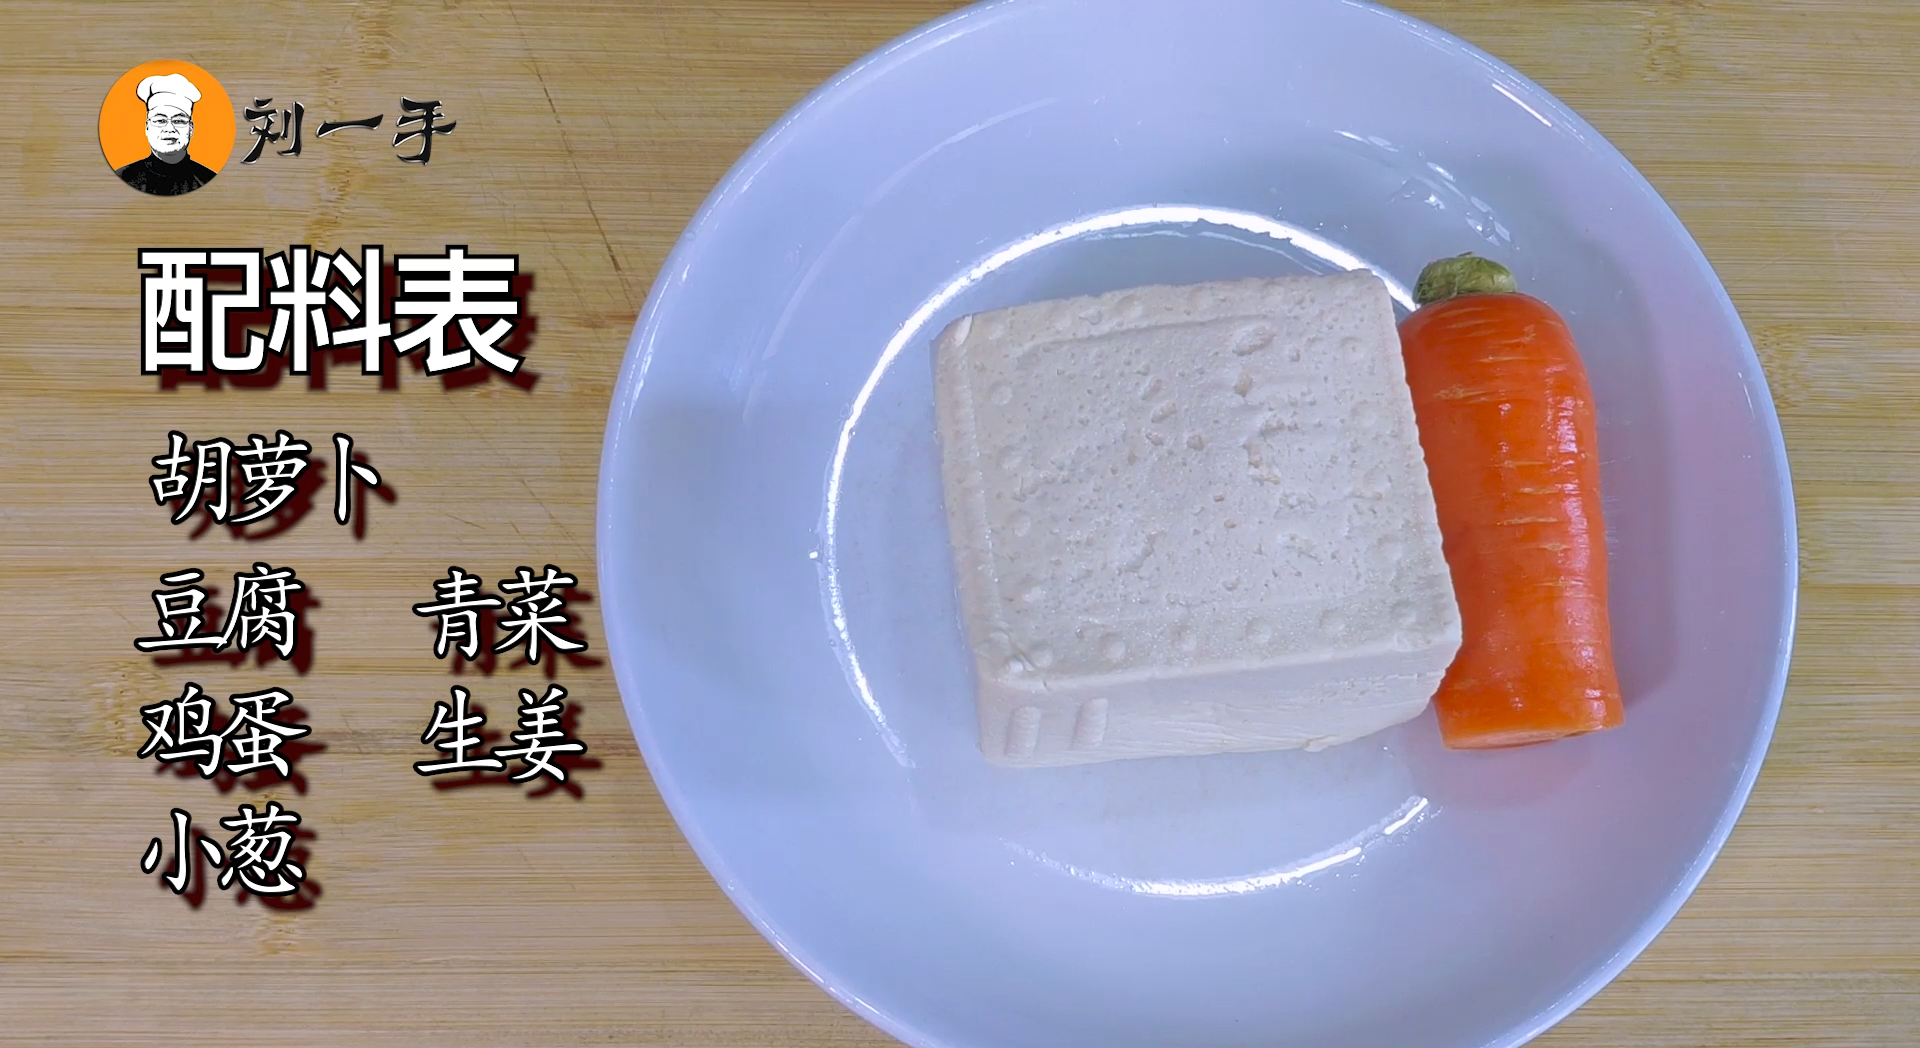 豆腐怎么做最好吃_盐卤豆腐和石膏豆腐的区别_一块豆腐